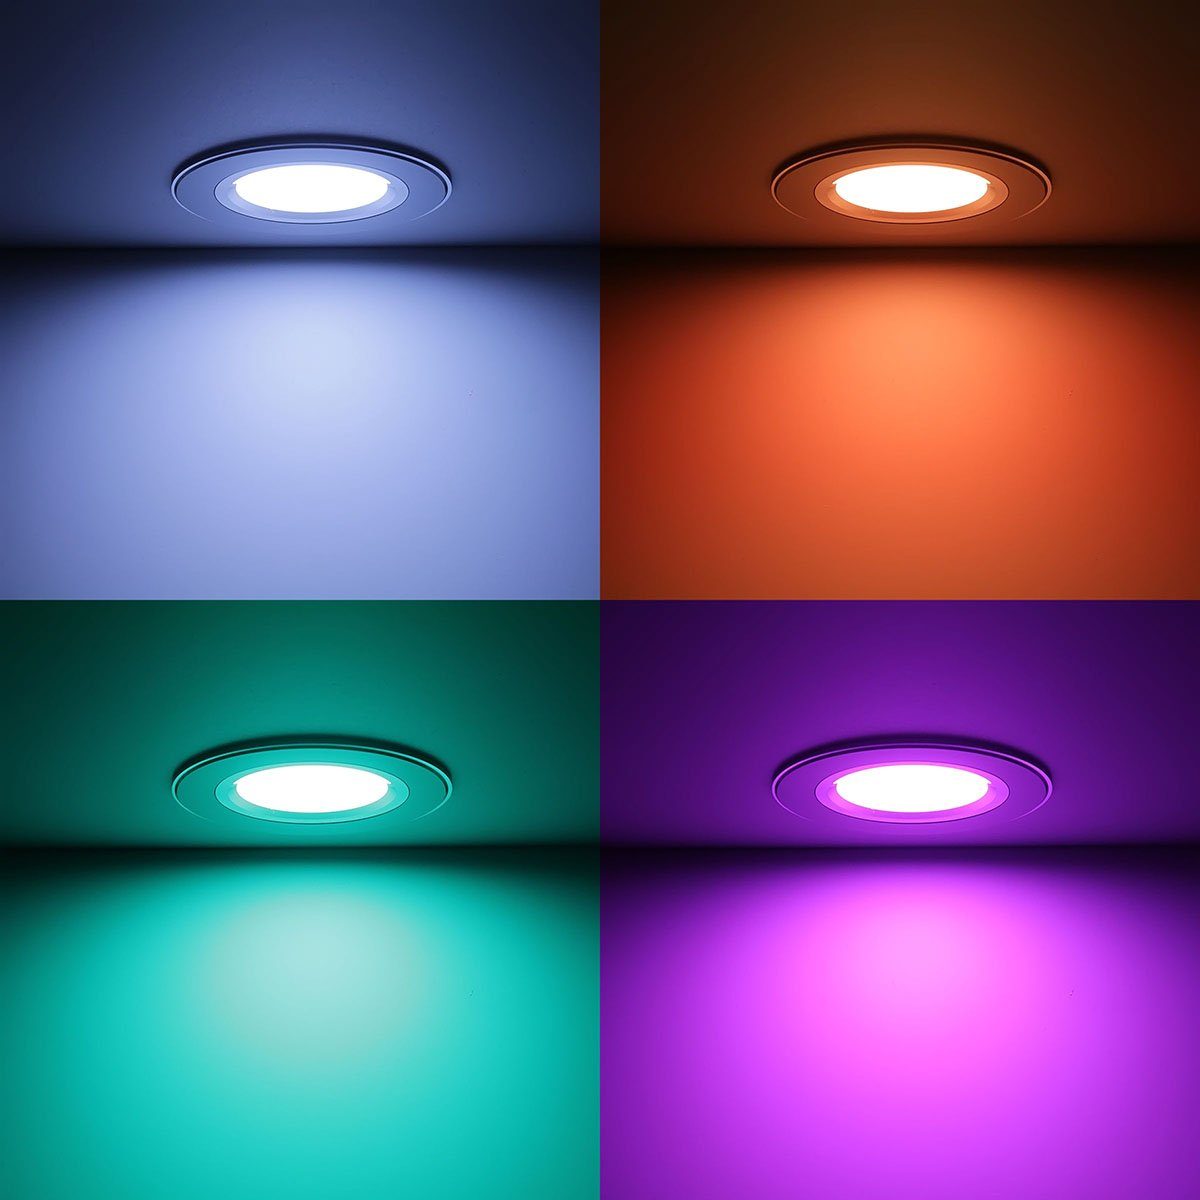 LED, Ogeled RGB, Dimmbar, 24V, Einbaustrahler Einbauleuchte Decken Lampe, Spot LED RGB, Einbauleuchten LED Einbauspots, Spot Lampe, Einbaustrahler,